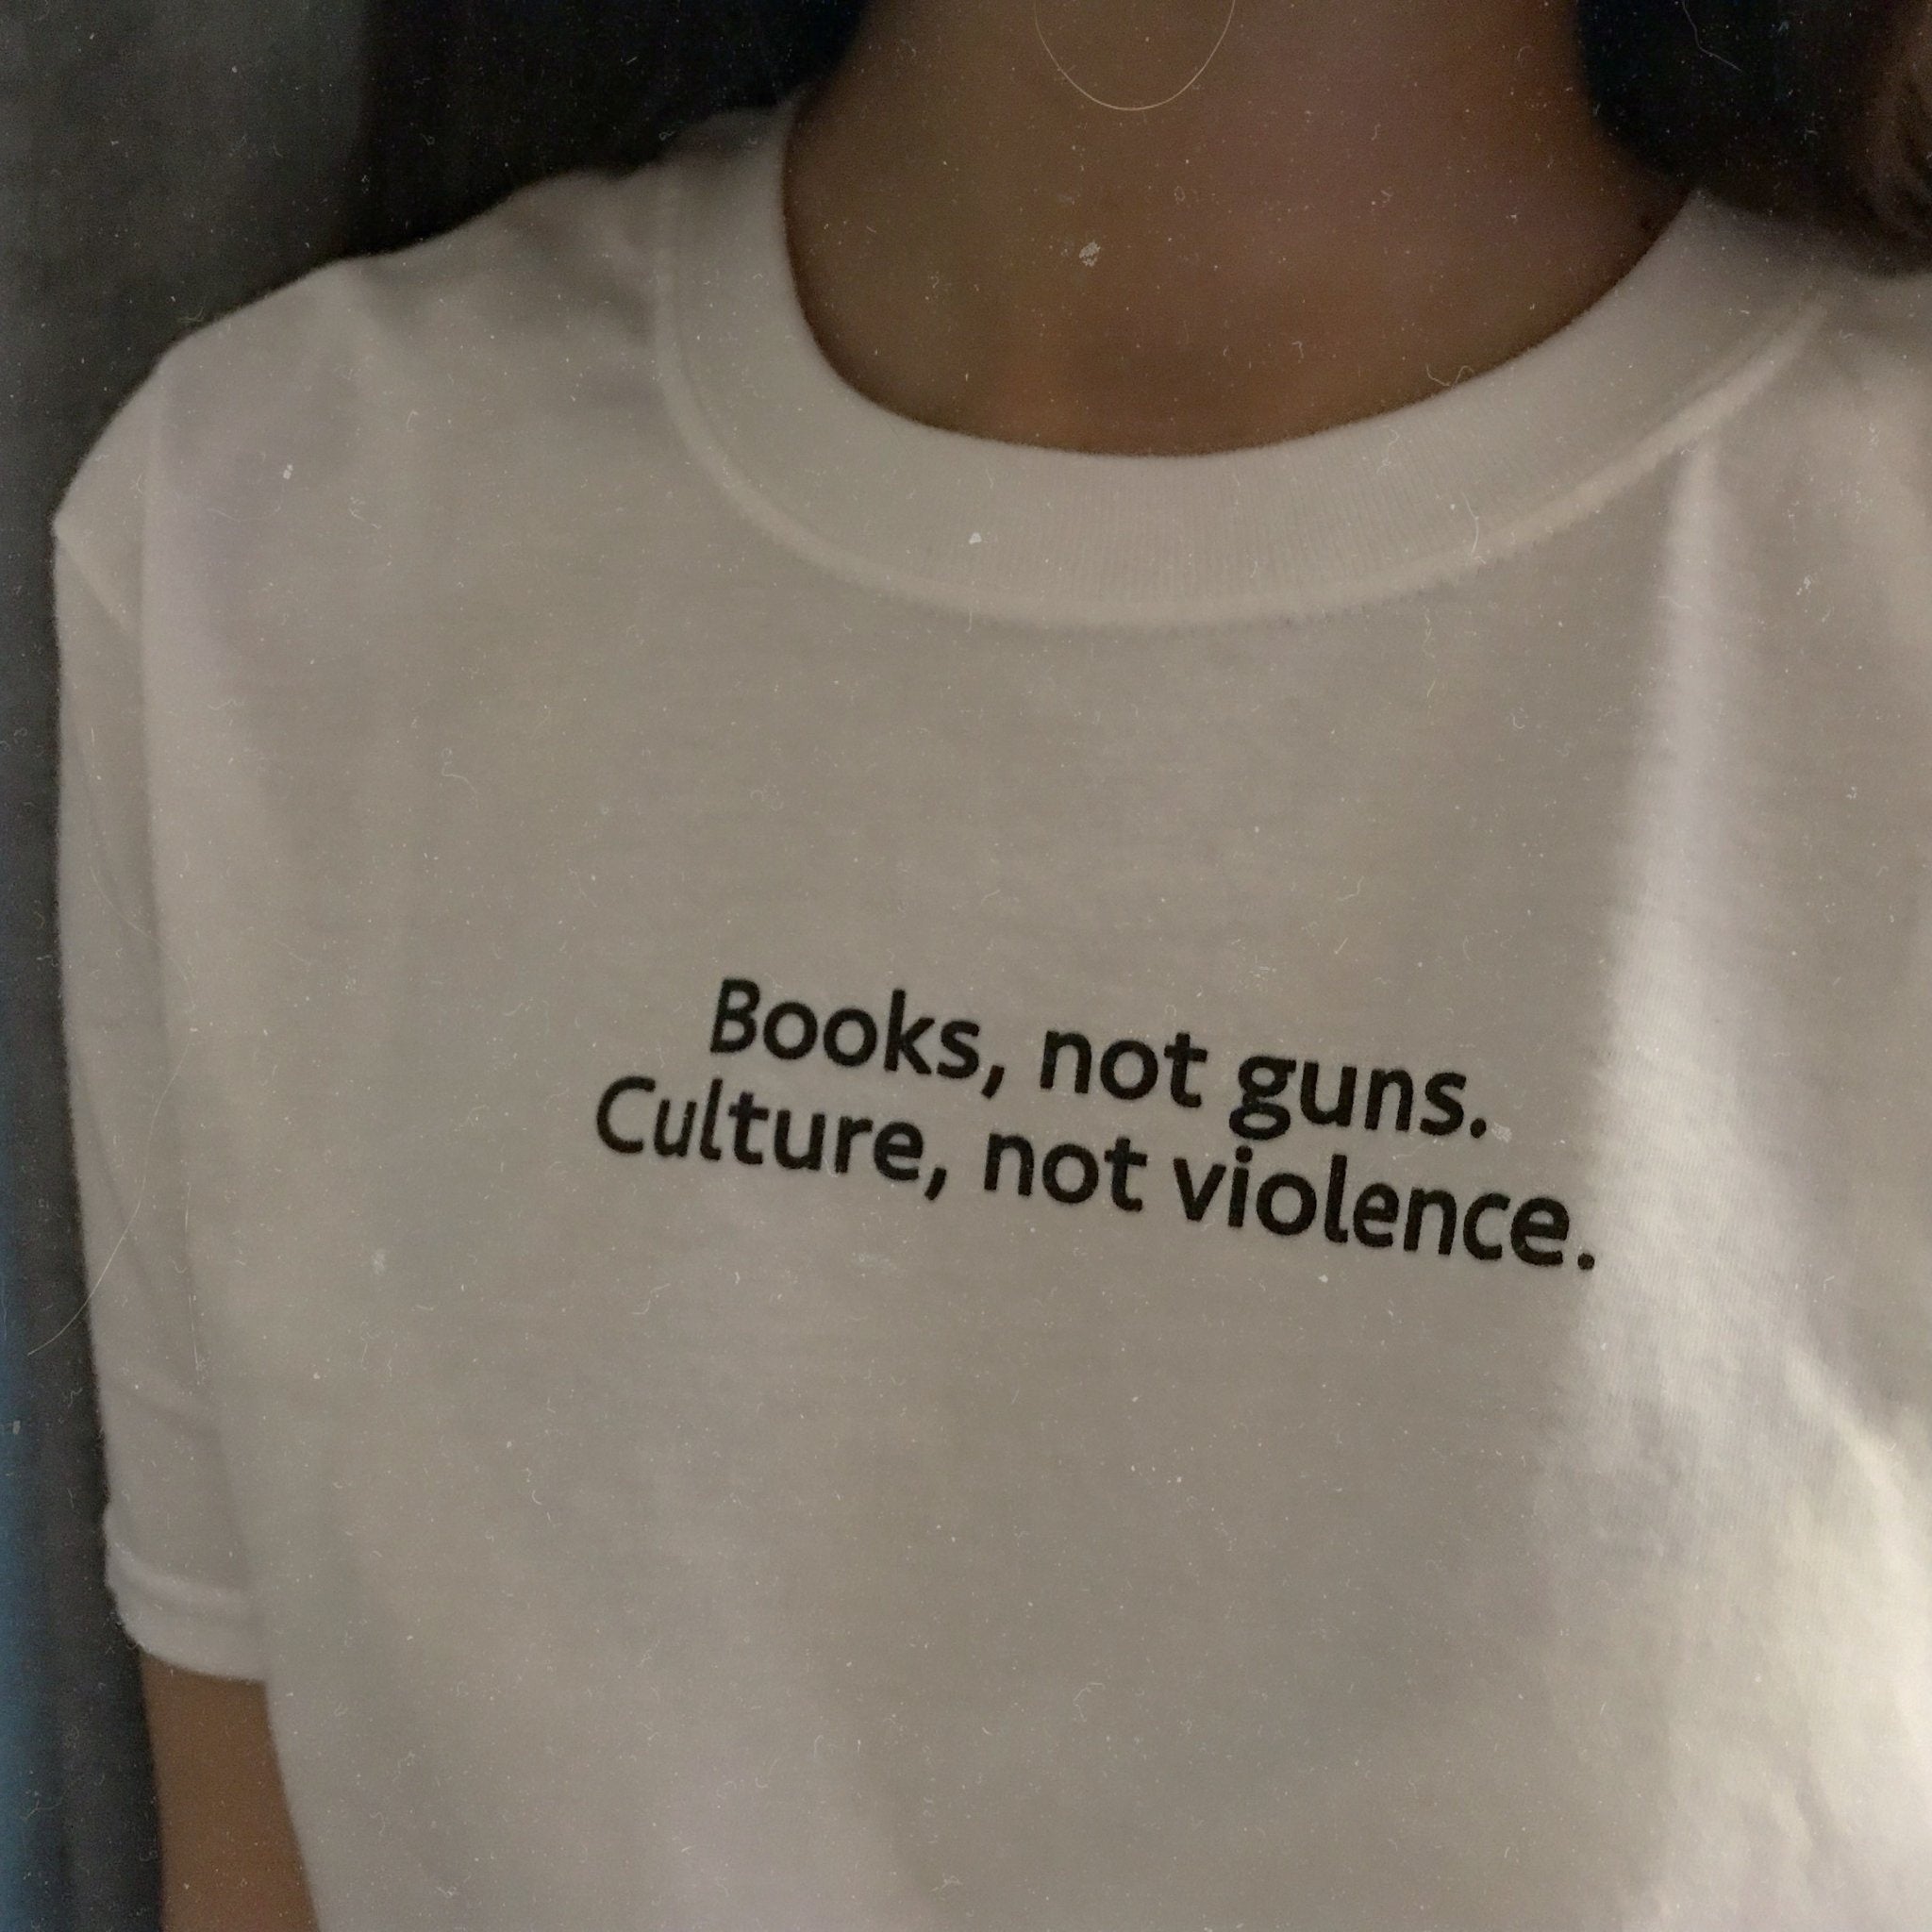 Books, not guns. Culture, not violence.